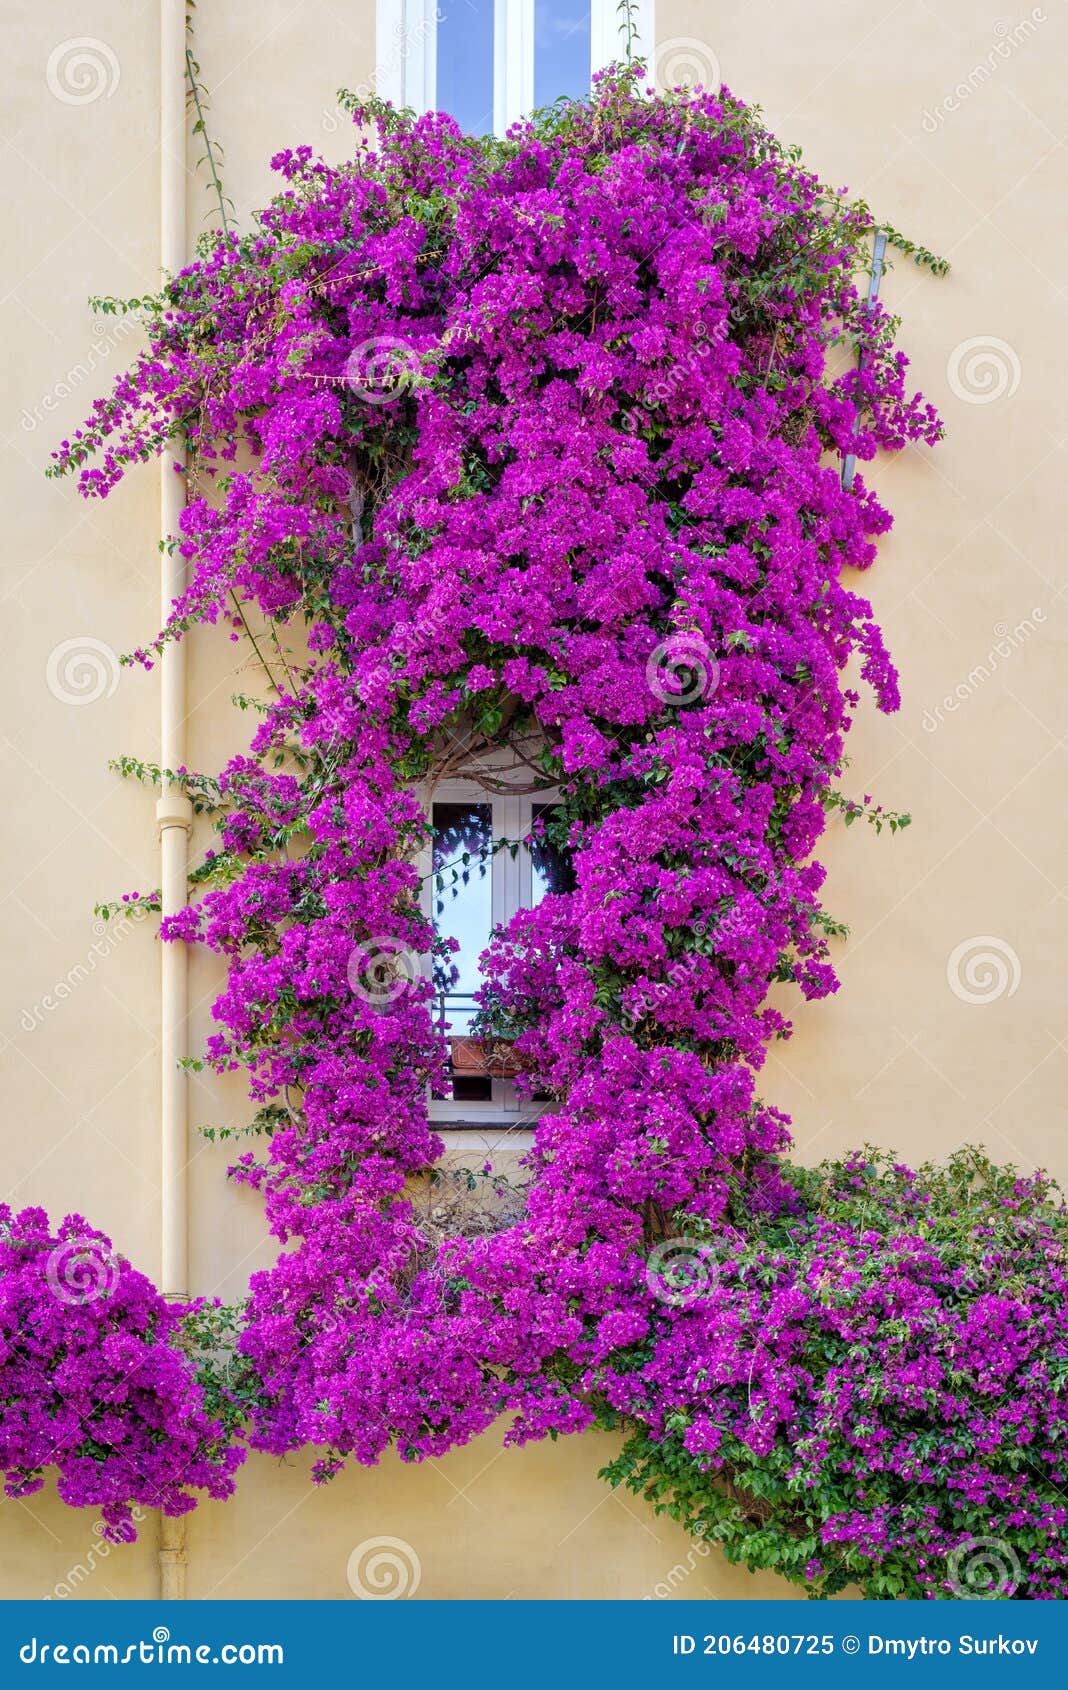 Fachada De Una Casa Con Buganvillas En Flor Imagen de archivo - Imagen de  cultura, pintoresco: 206480725